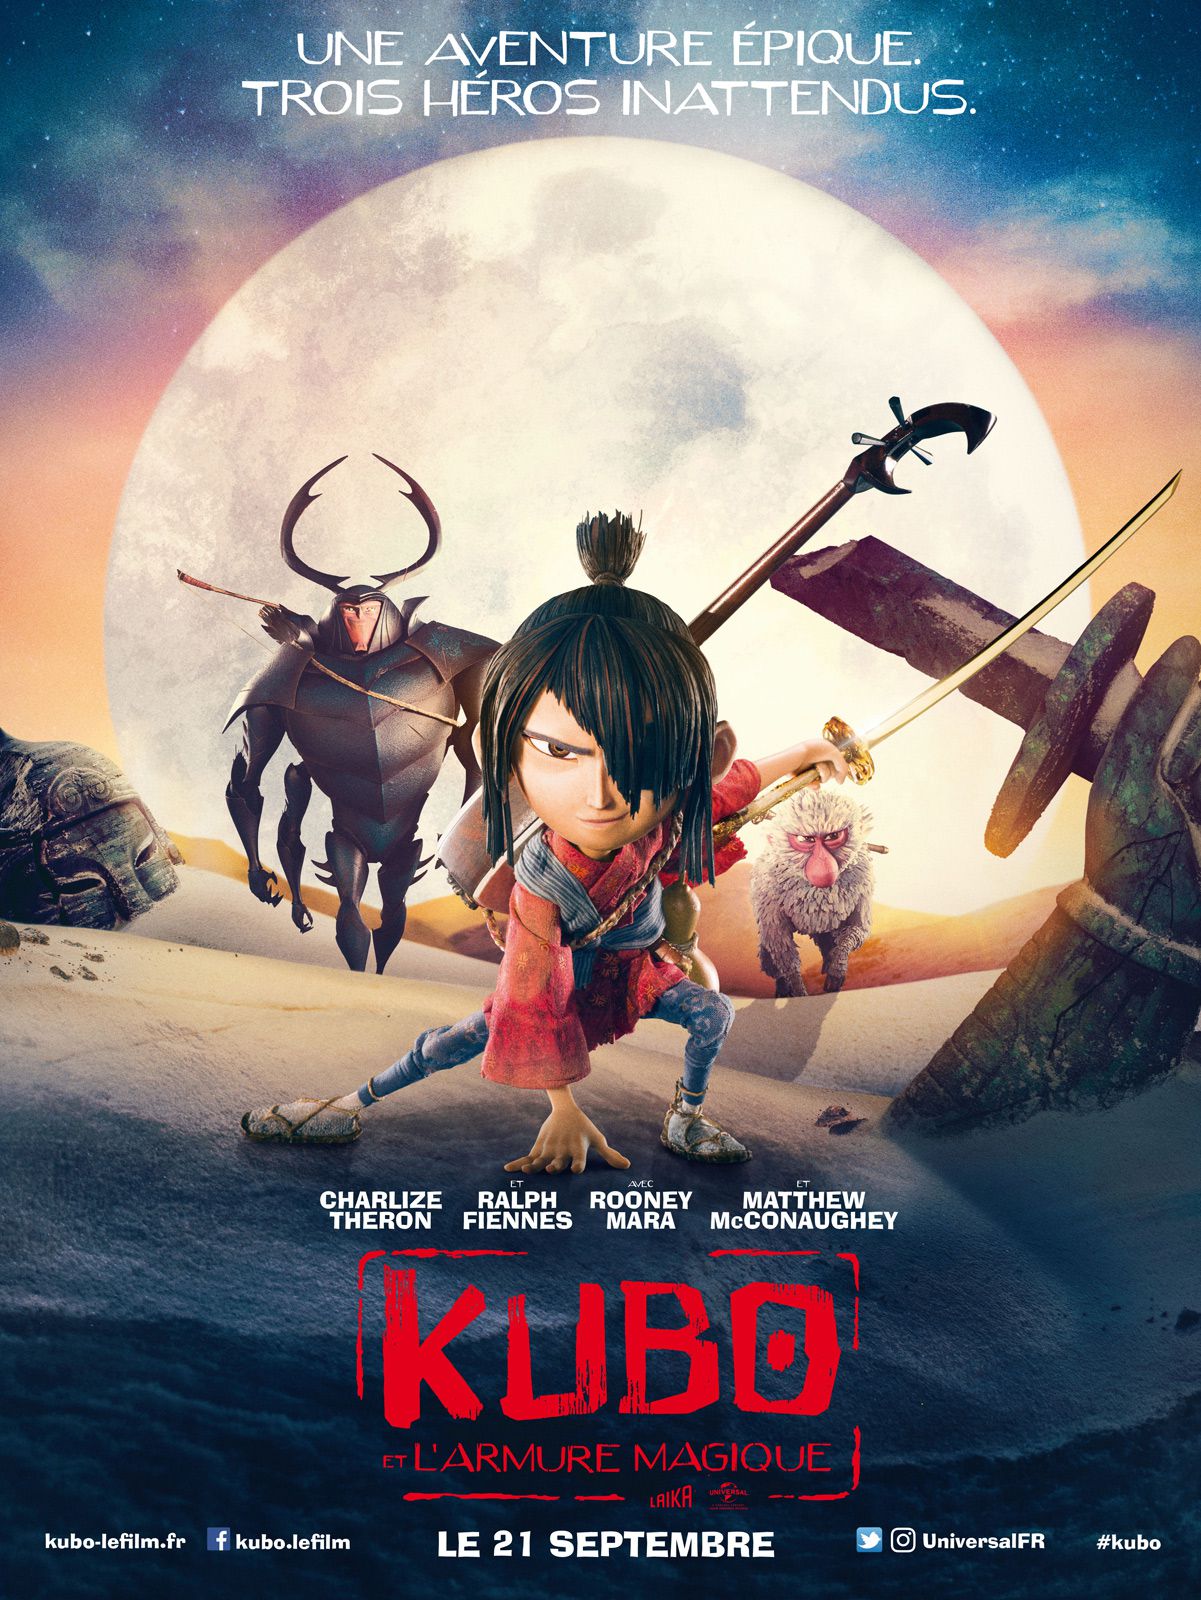 Kubo et l'Armure magique - Long-métrage d'animation (2016) streaming VF gratuit complet